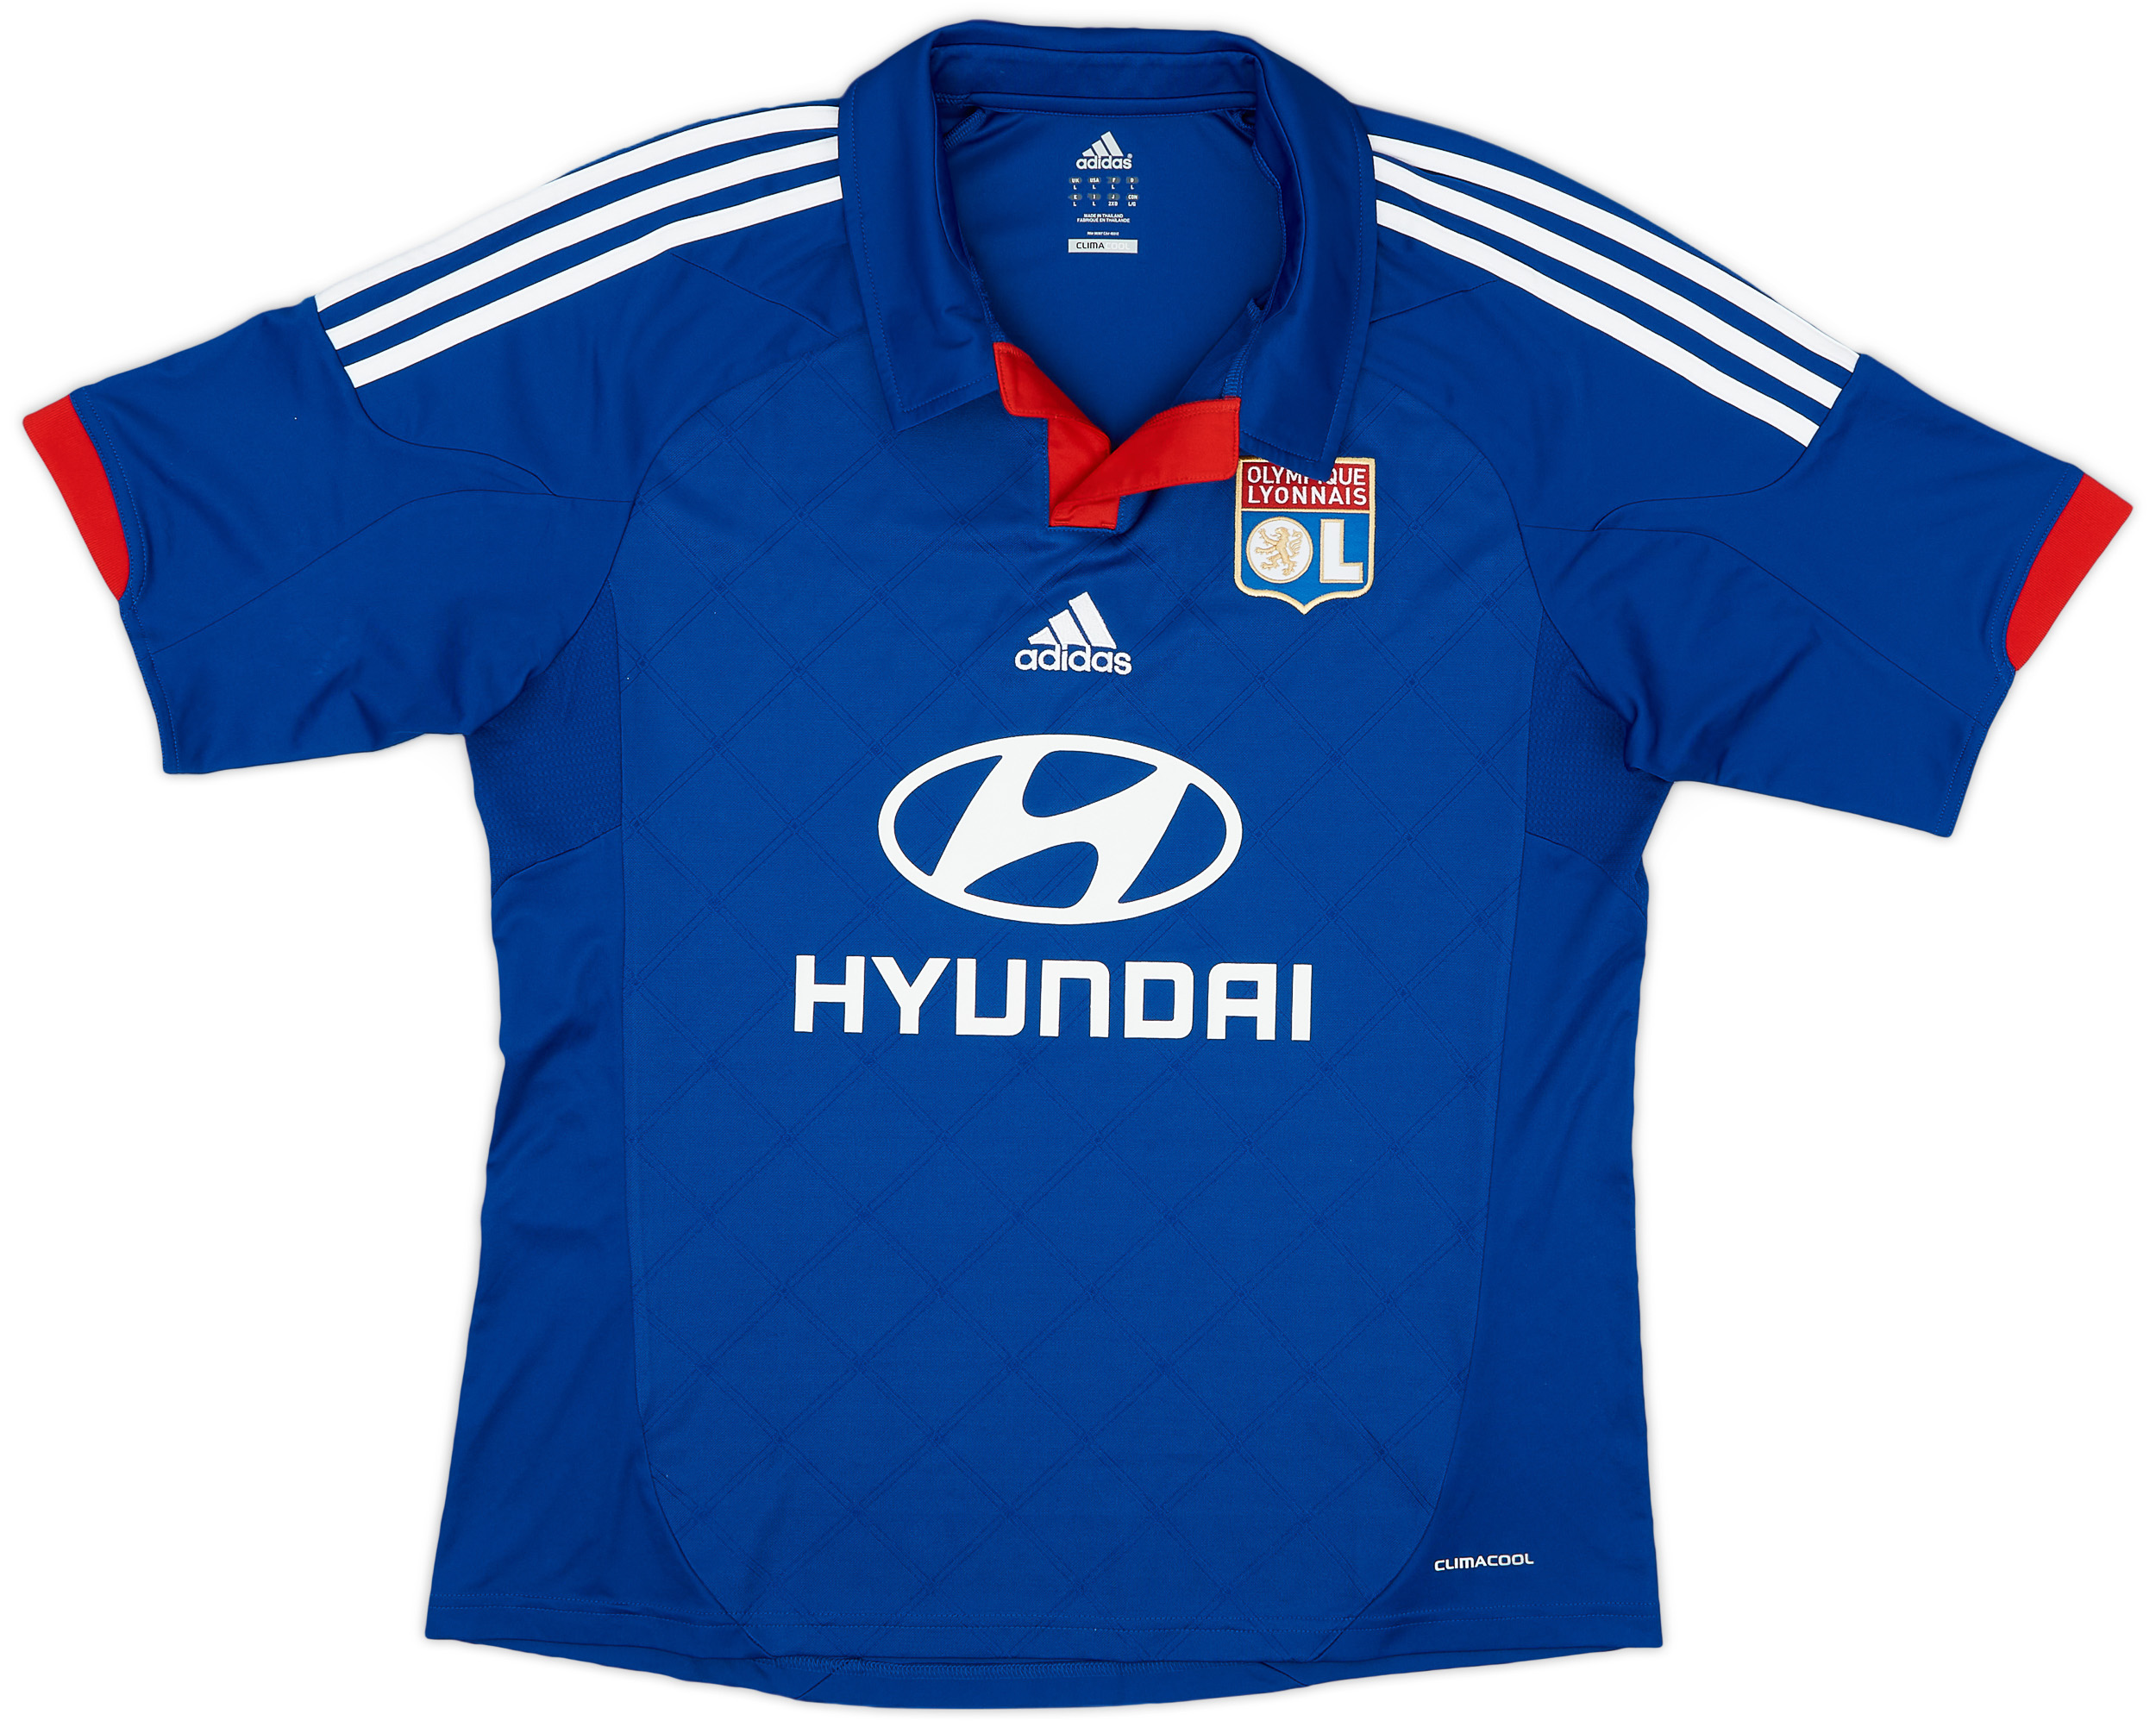 2012-13 Lyon Away Shirt - 9/10 - ()